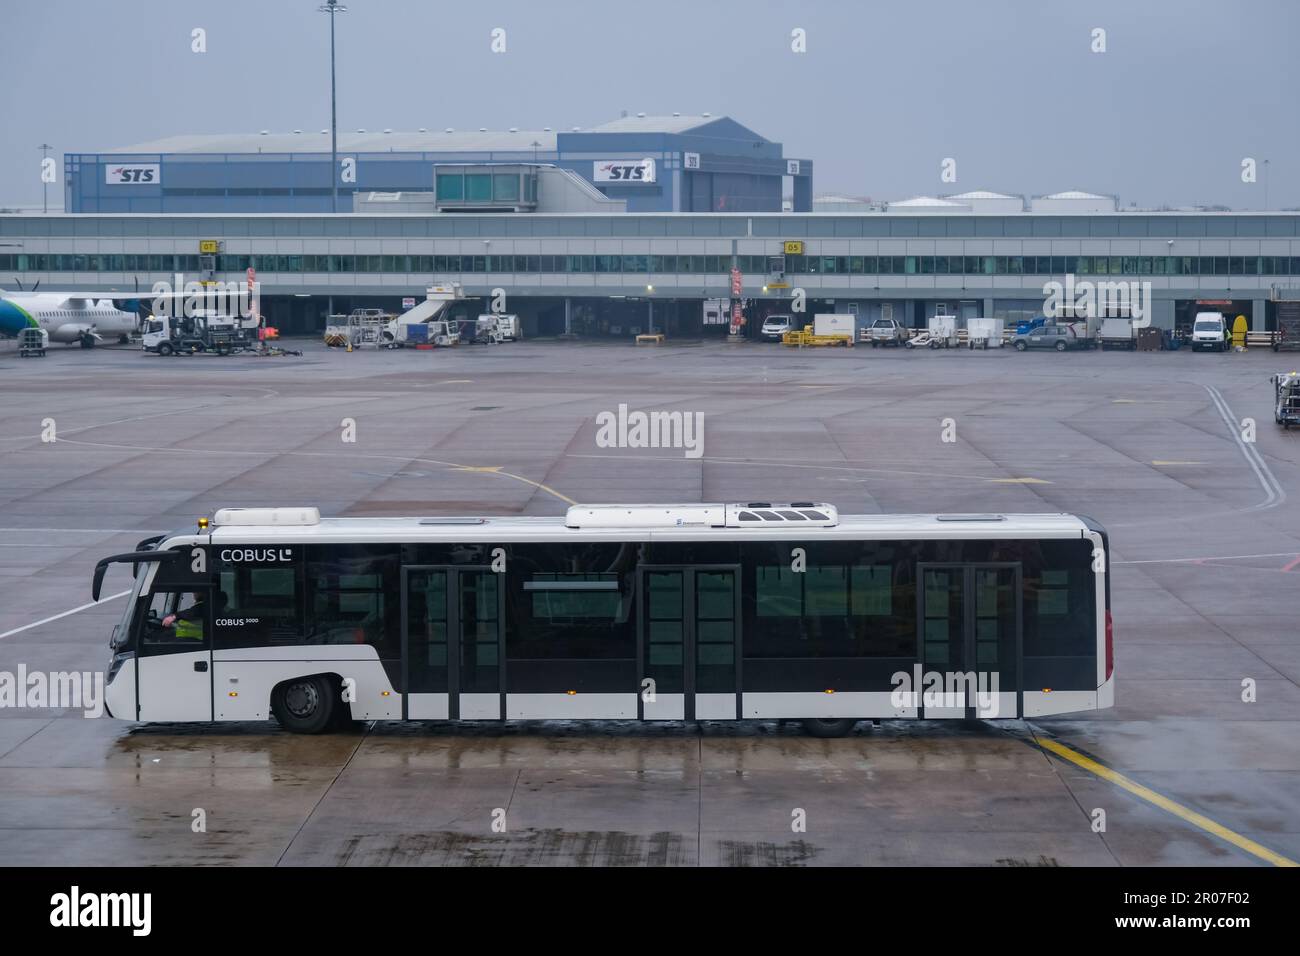 Autobus bianco vuoto per l'aeroporto in una giornata di pioggia. Servizio aereo all'aeroporto di Manchester Foto Stock